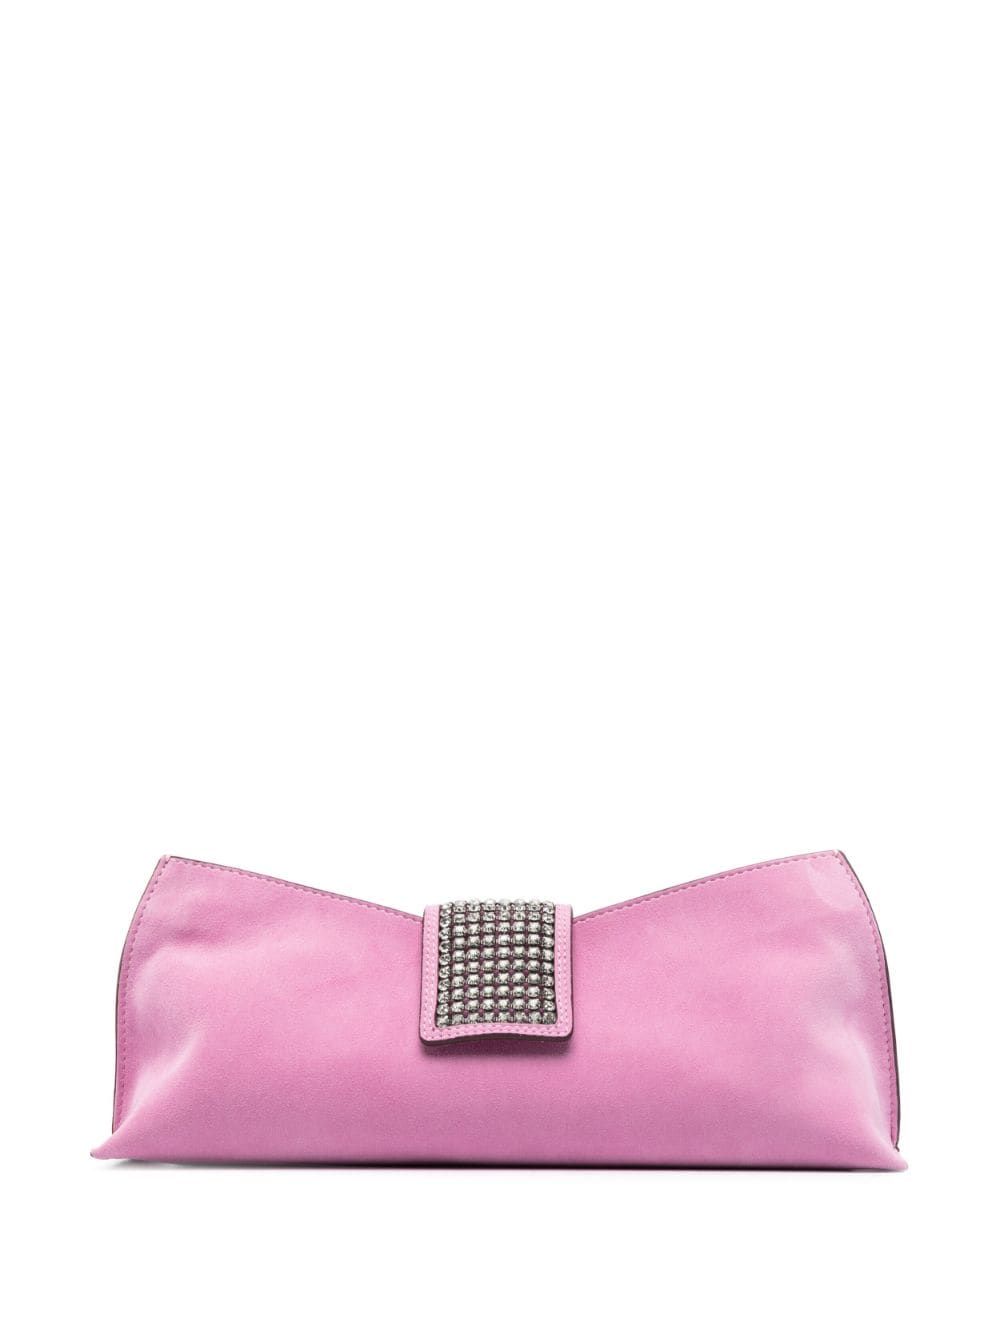 crystal-embellished suede clutch bag | Farfetch Global